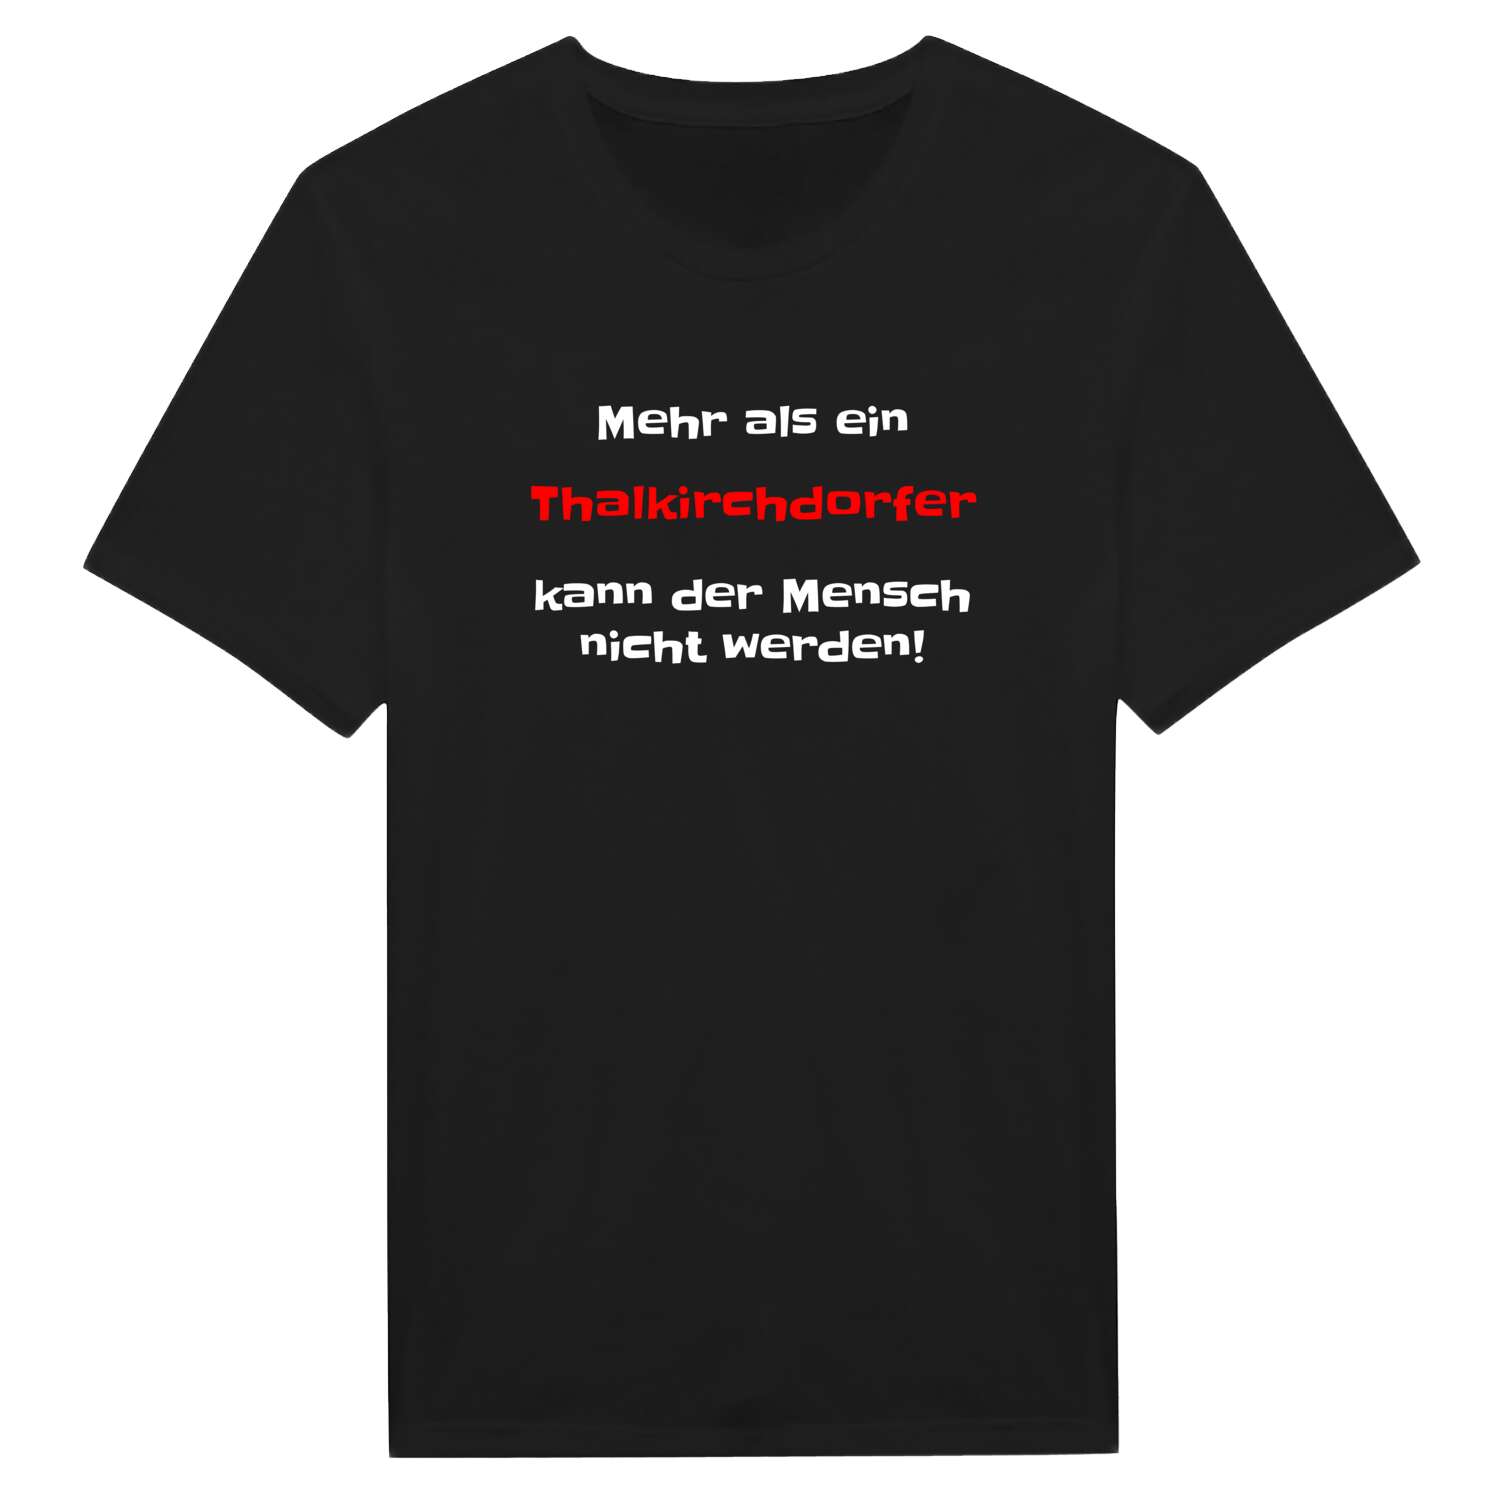 Thalkirchdorf T-Shirt »Mehr als ein«